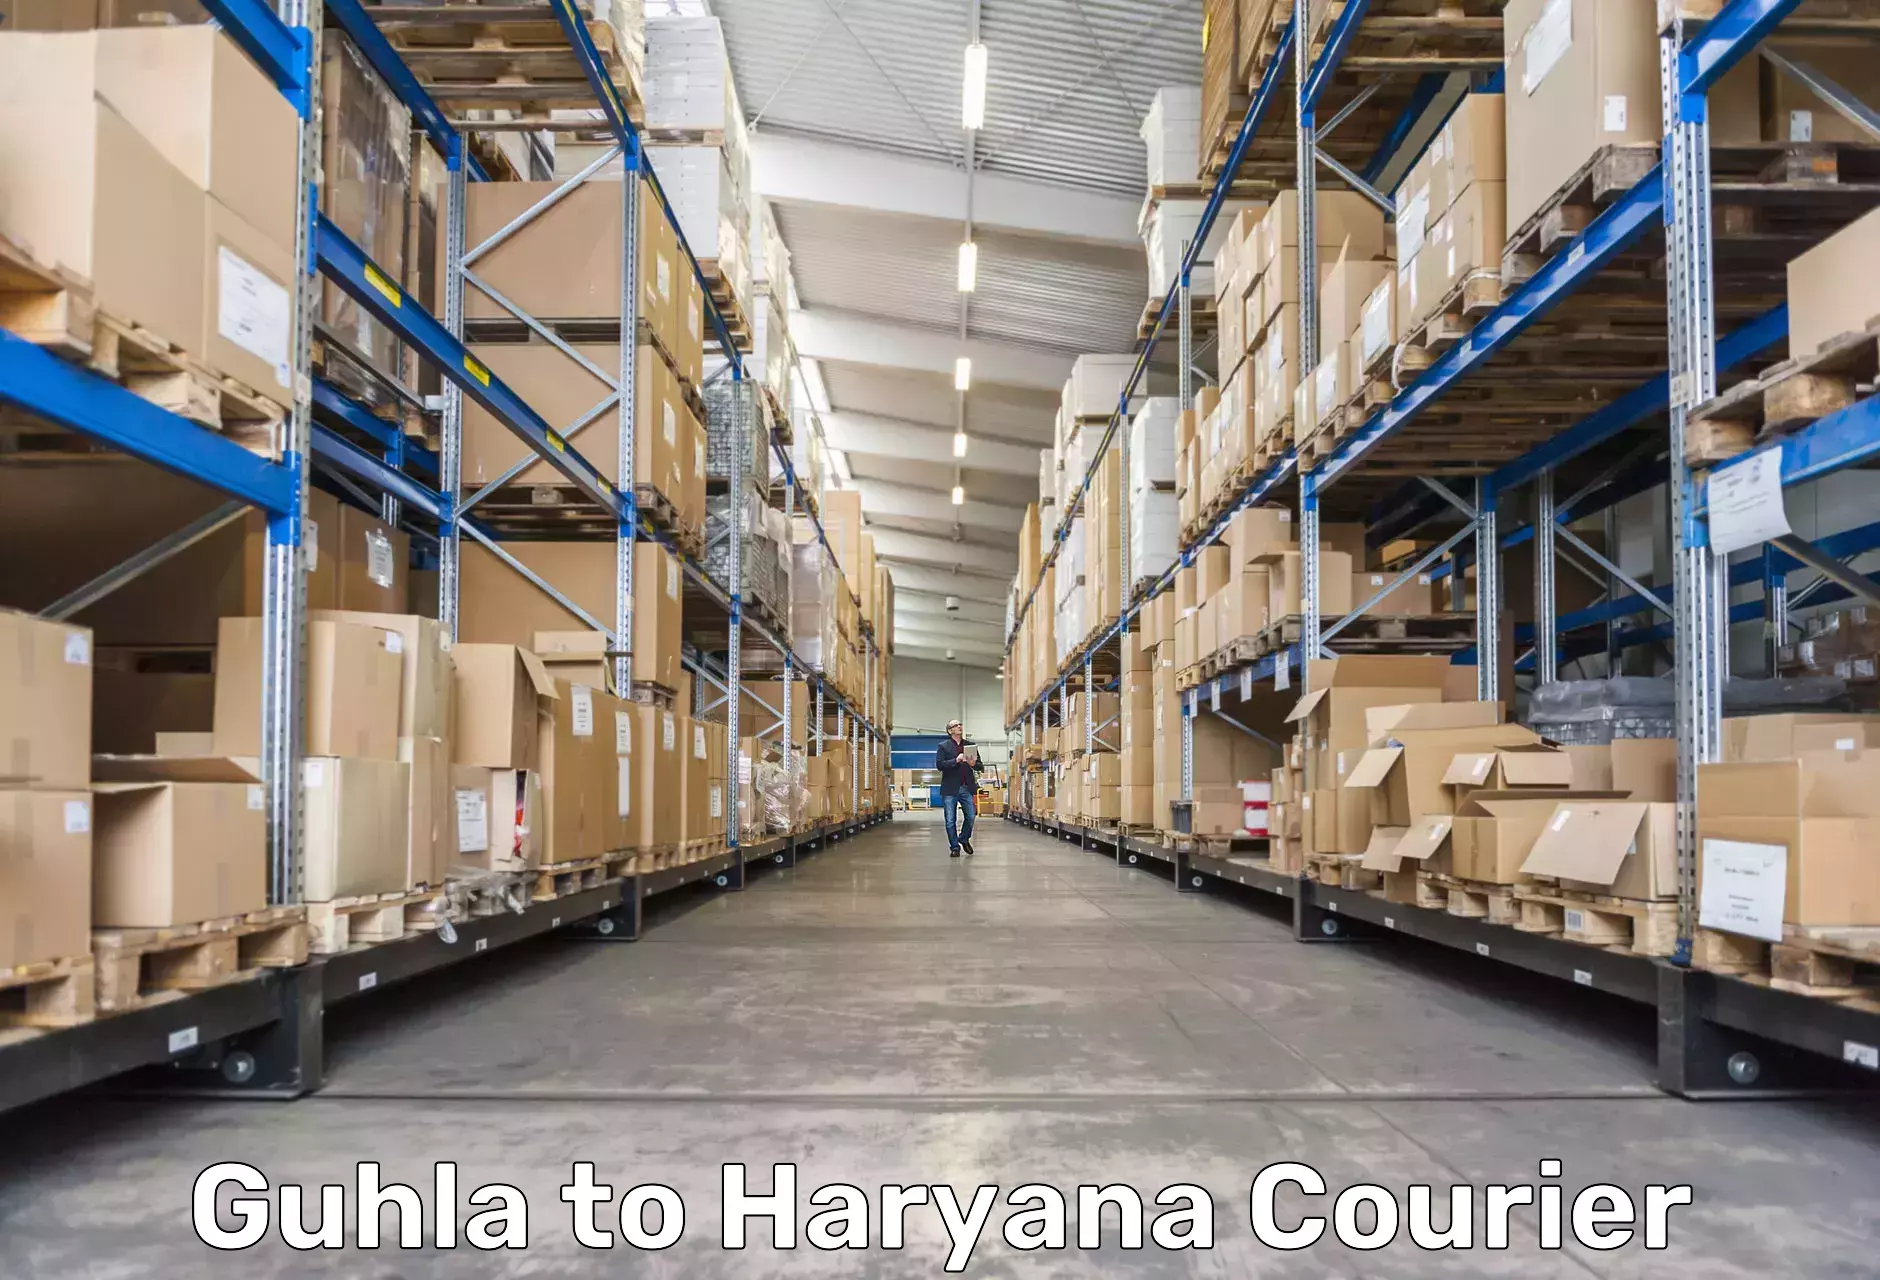 Package delivery network Guhla to Kurukshetra University